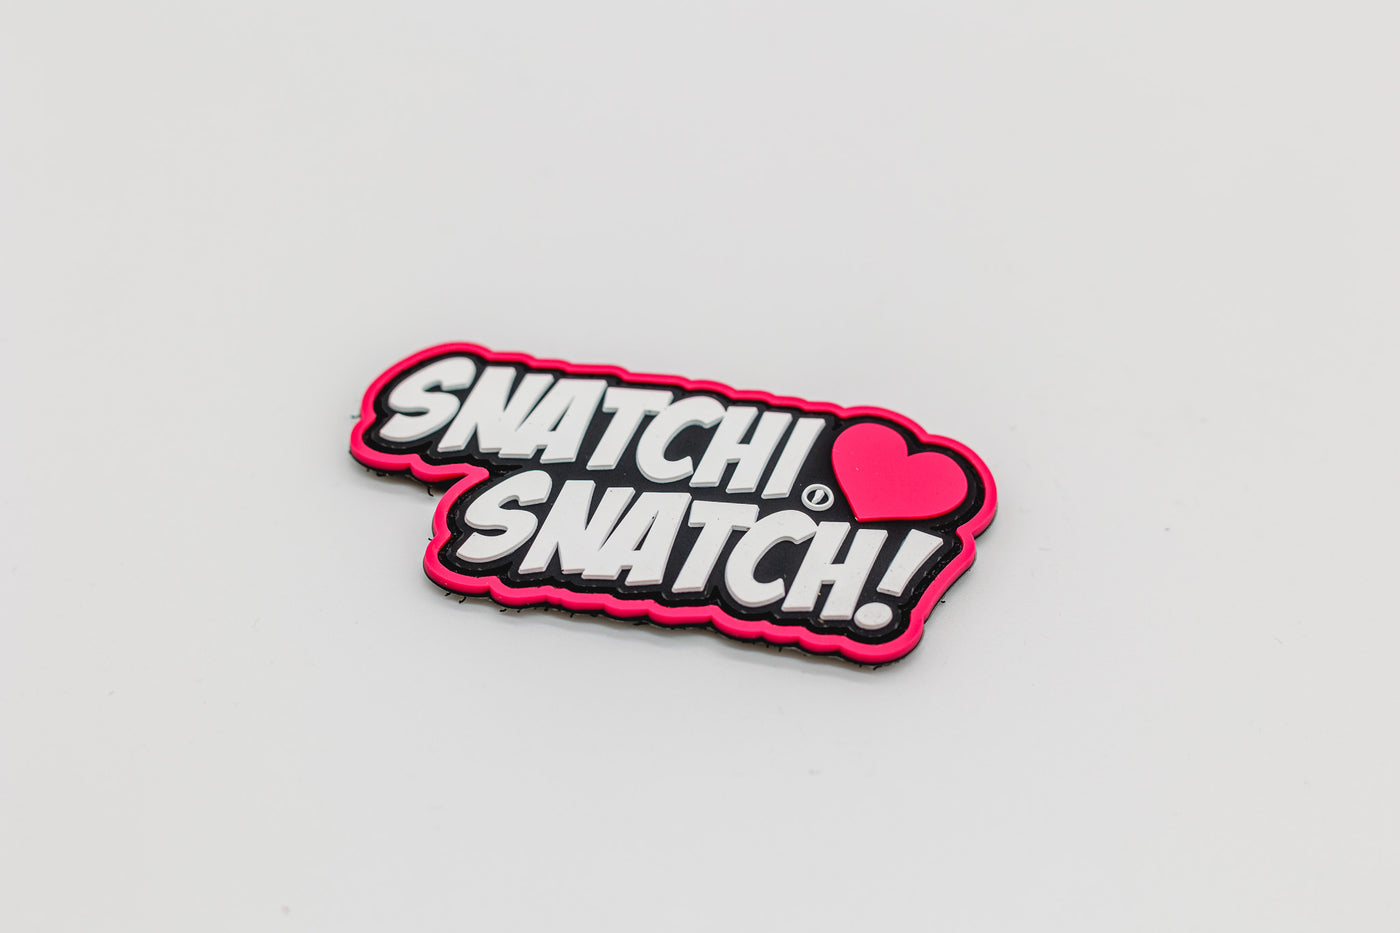 SNATCHI SNATCH - Patch - pink